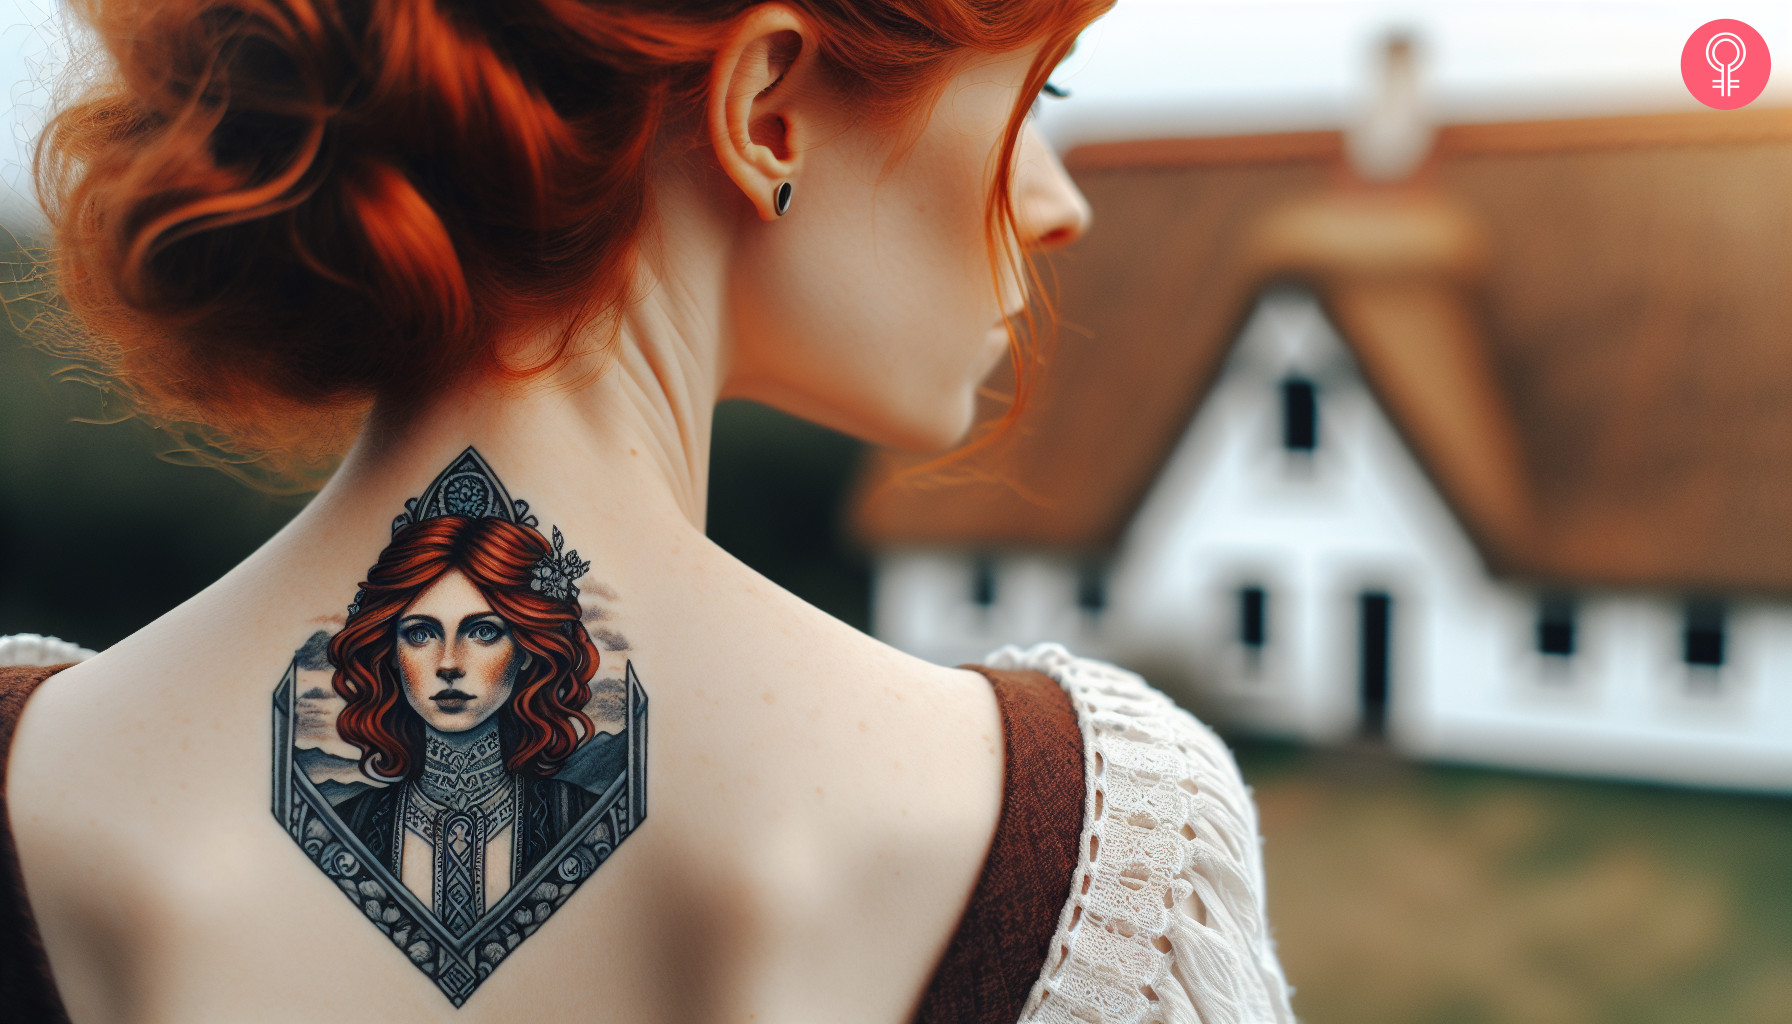 A portrait of Sansa Stark on the upper back